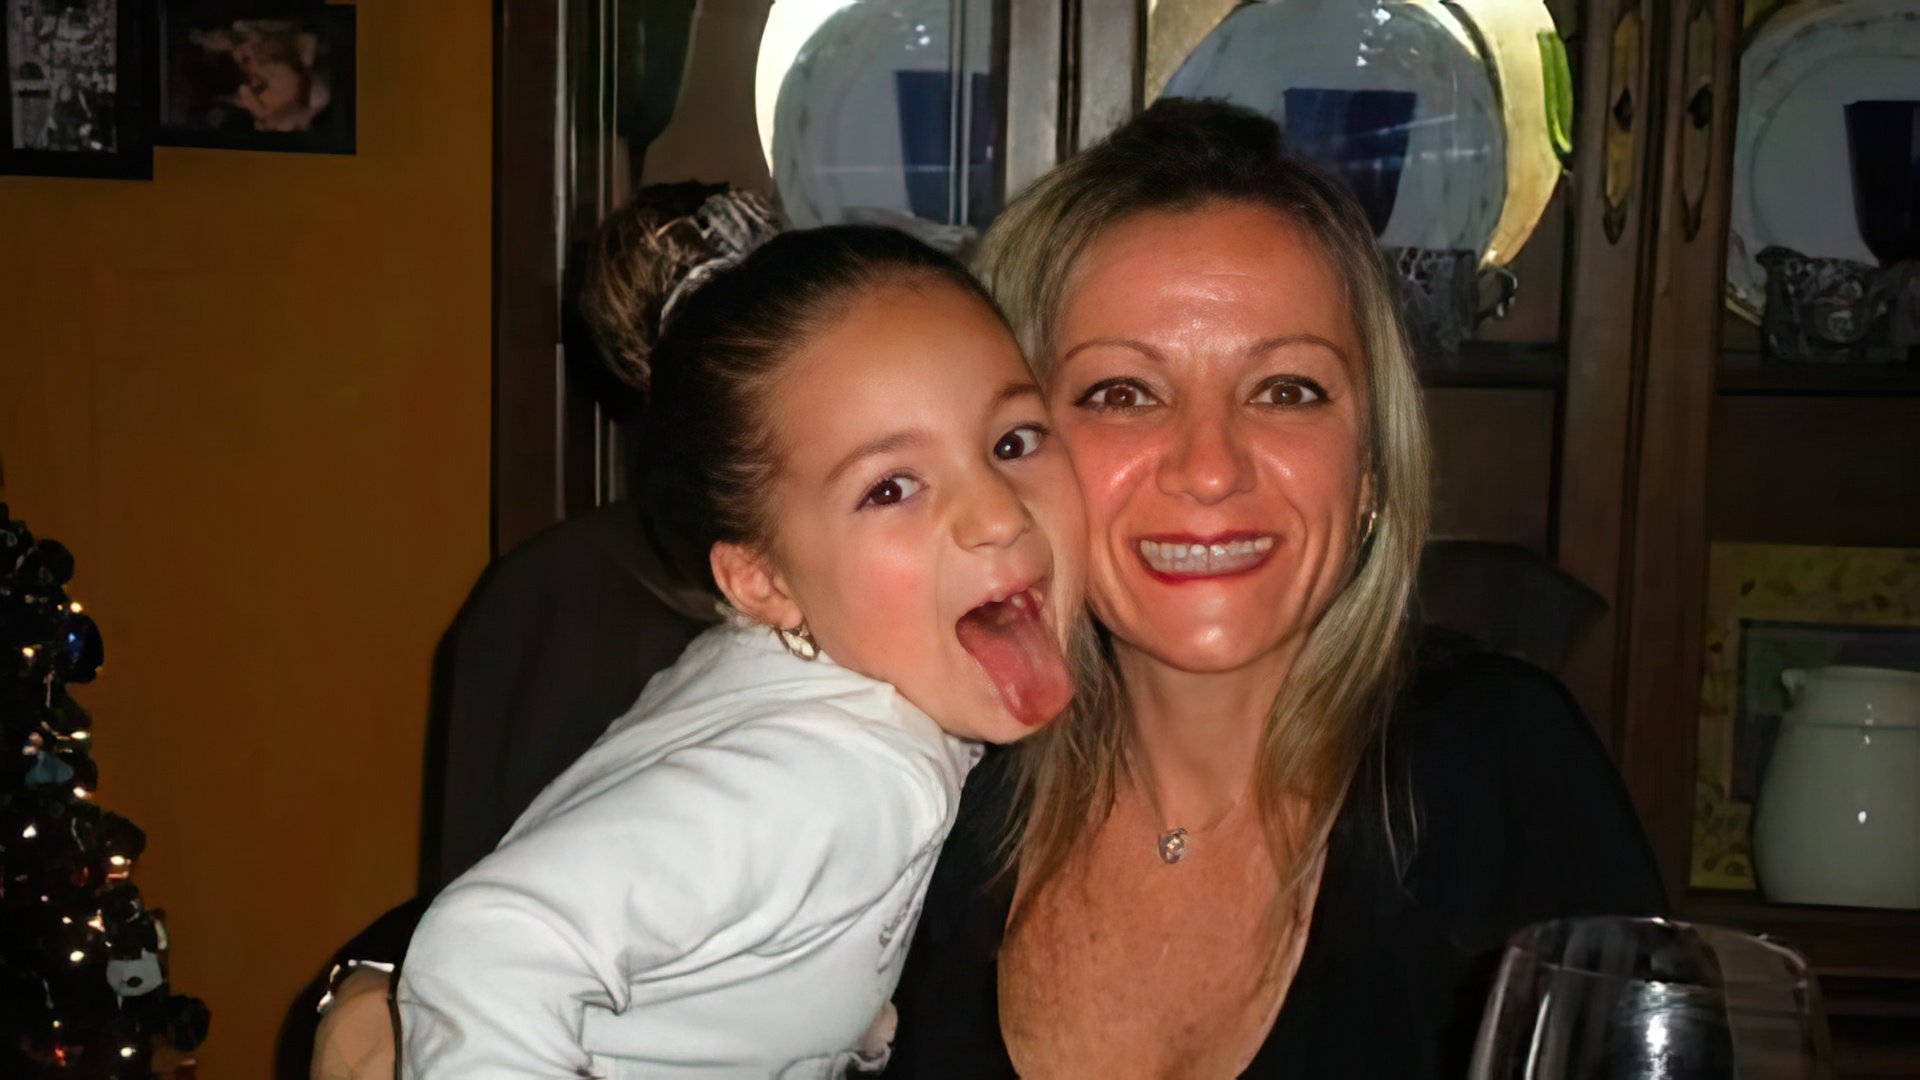 Little Danielle Bregoli with Her Mum